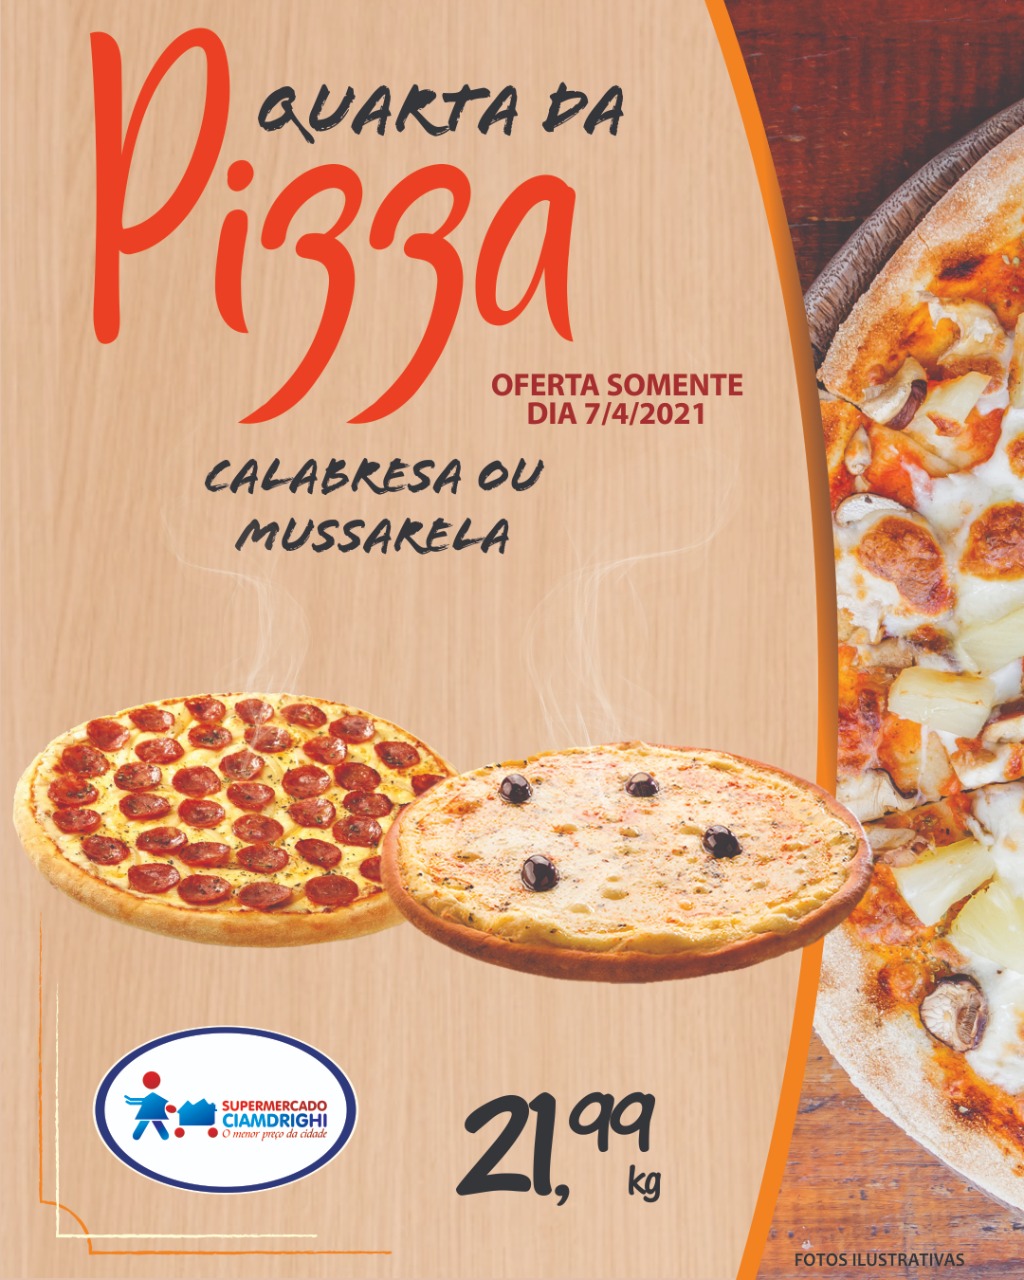 Quarta de Pizza, Hortifrúti e mais 24 ofertas pelo delivery do Ciamdrighi